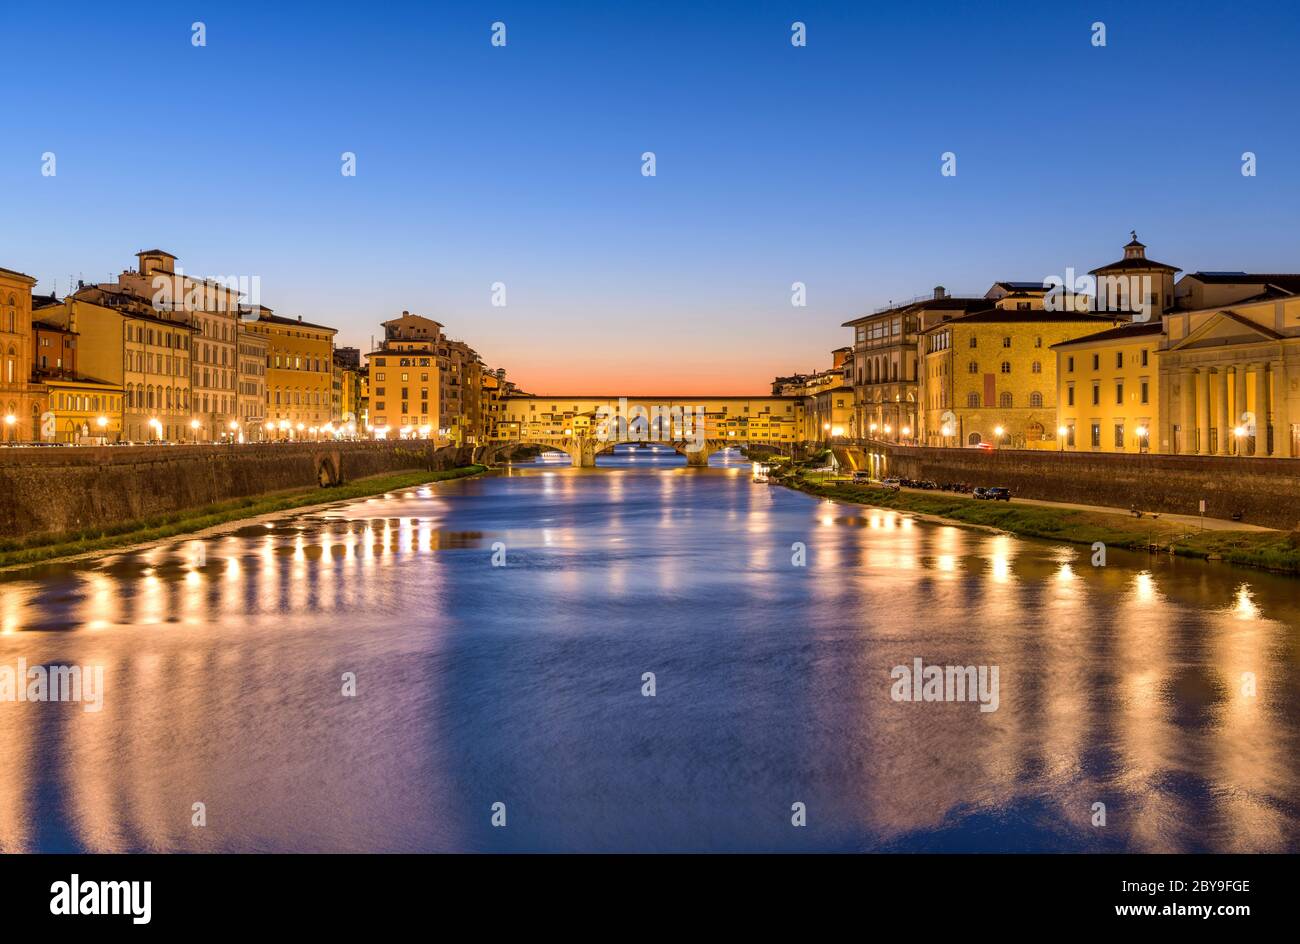 Arno River - VUE panoramique sur l'Arno au coucher du soleil sur le Ponte Vecchio 'Vieux Pont' au coeur de Florence, en Toscane, en Italie. Banque D'Images